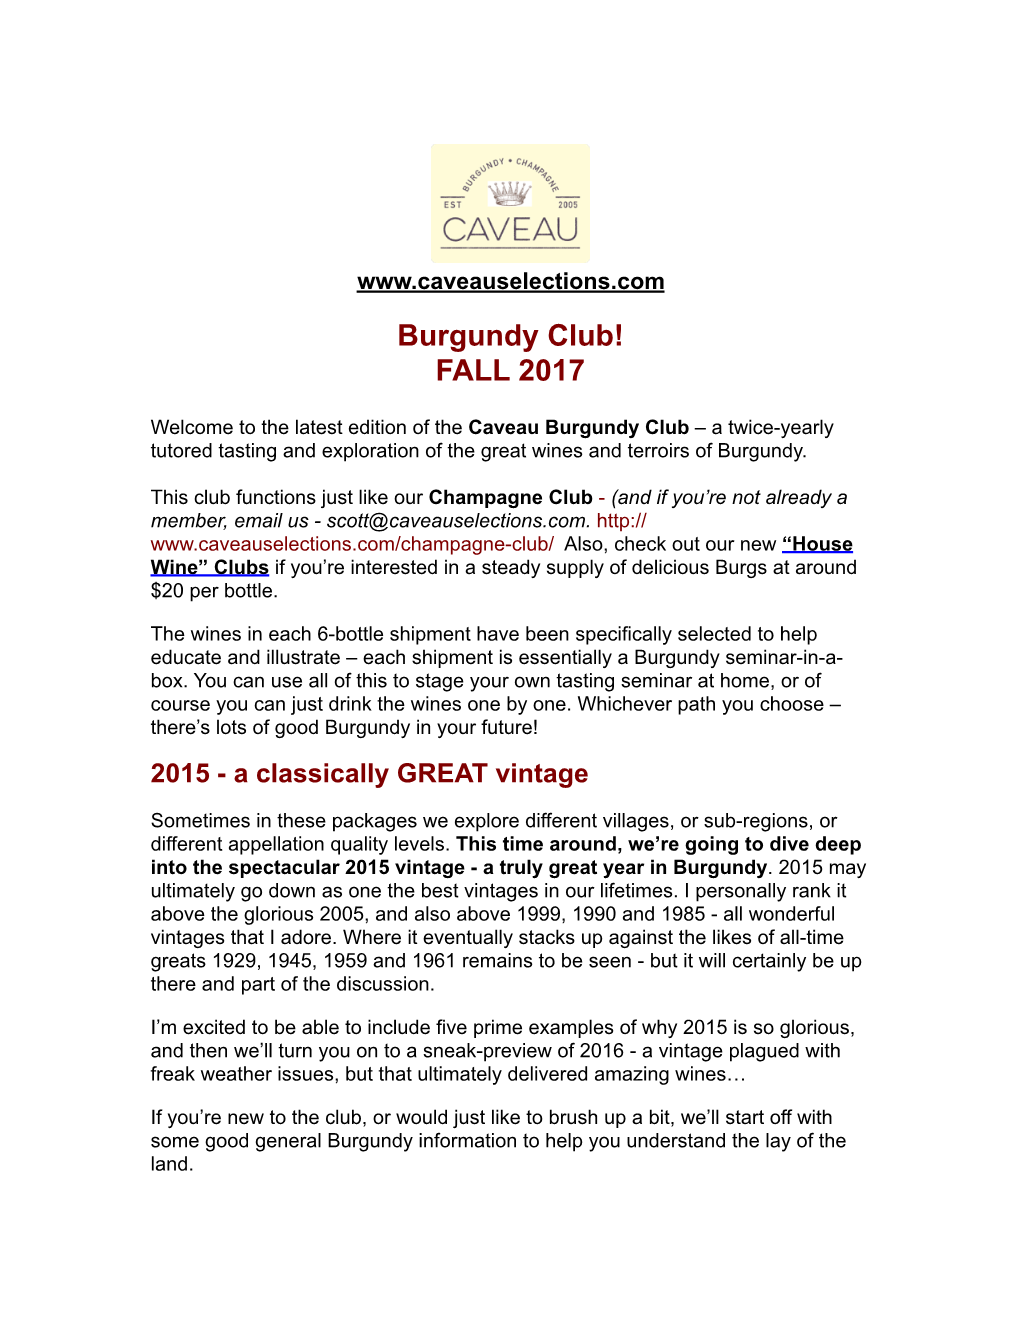 Burgundy Club Fall 2017